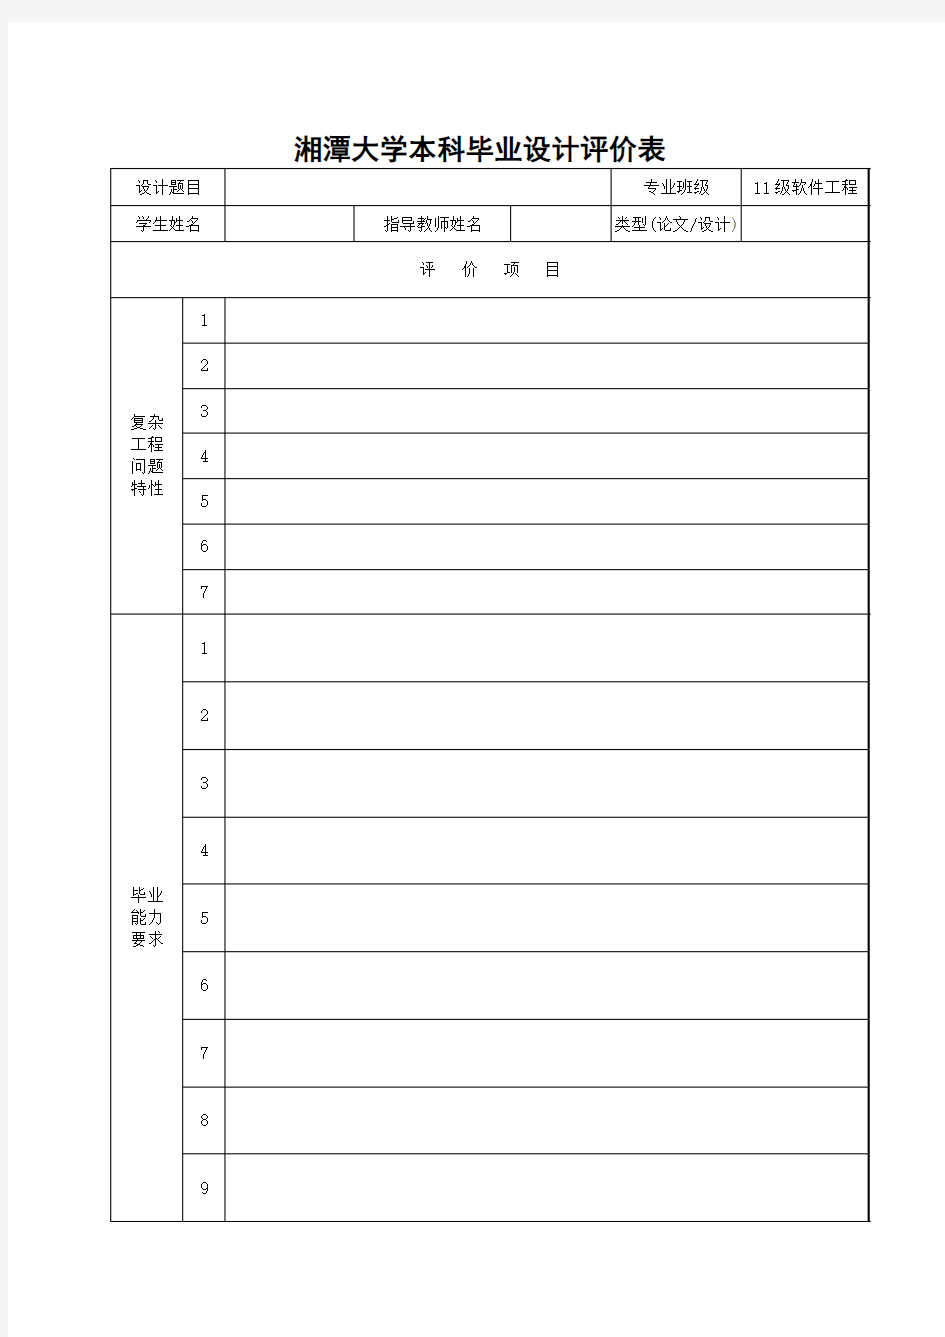 湘潭大学本科毕业设计评价表(2016征求意见稿)